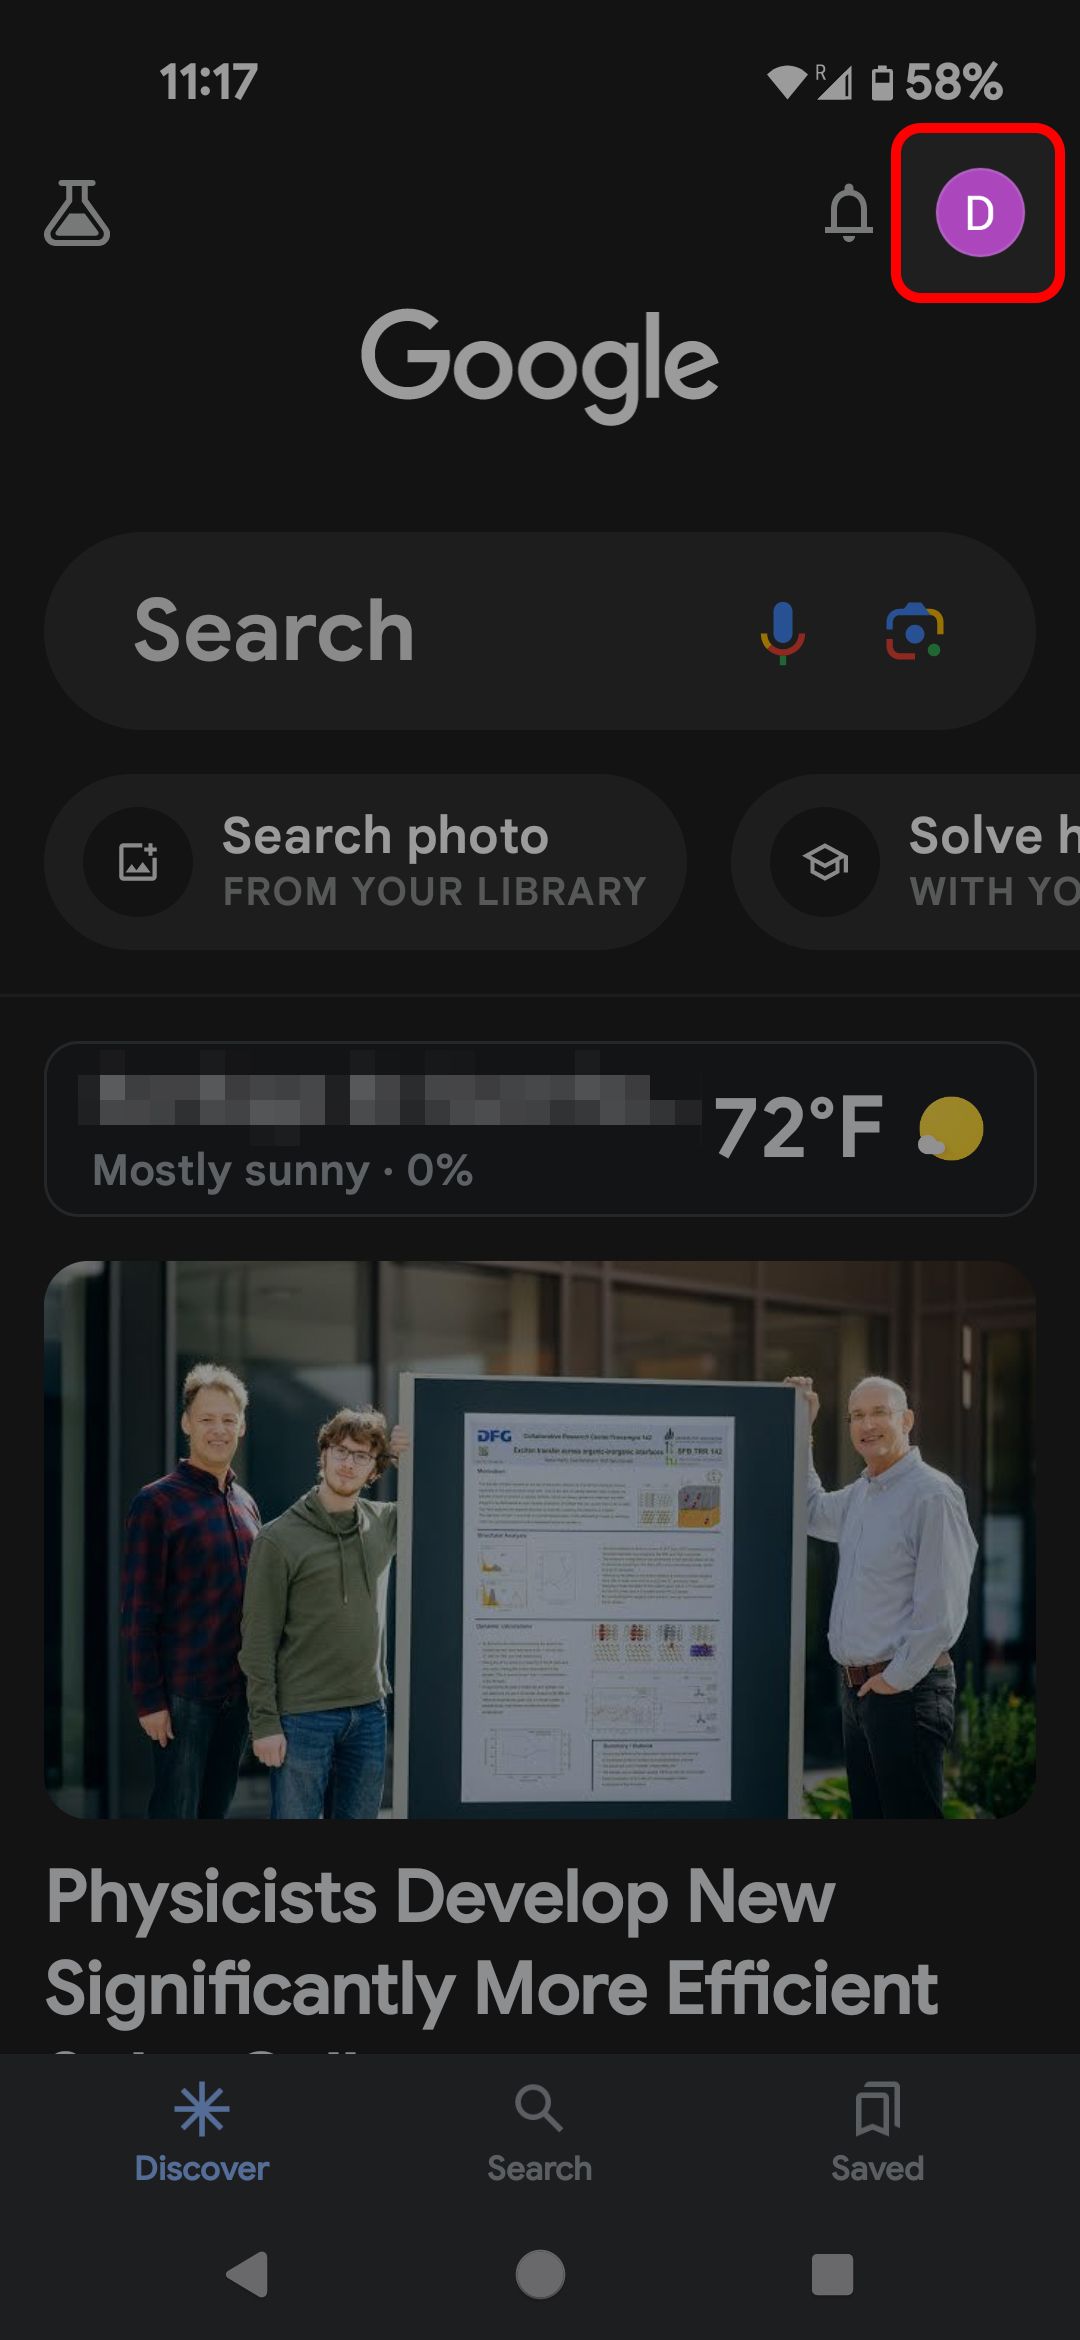 Tela inicial do Google app destacando o ícone do perfil